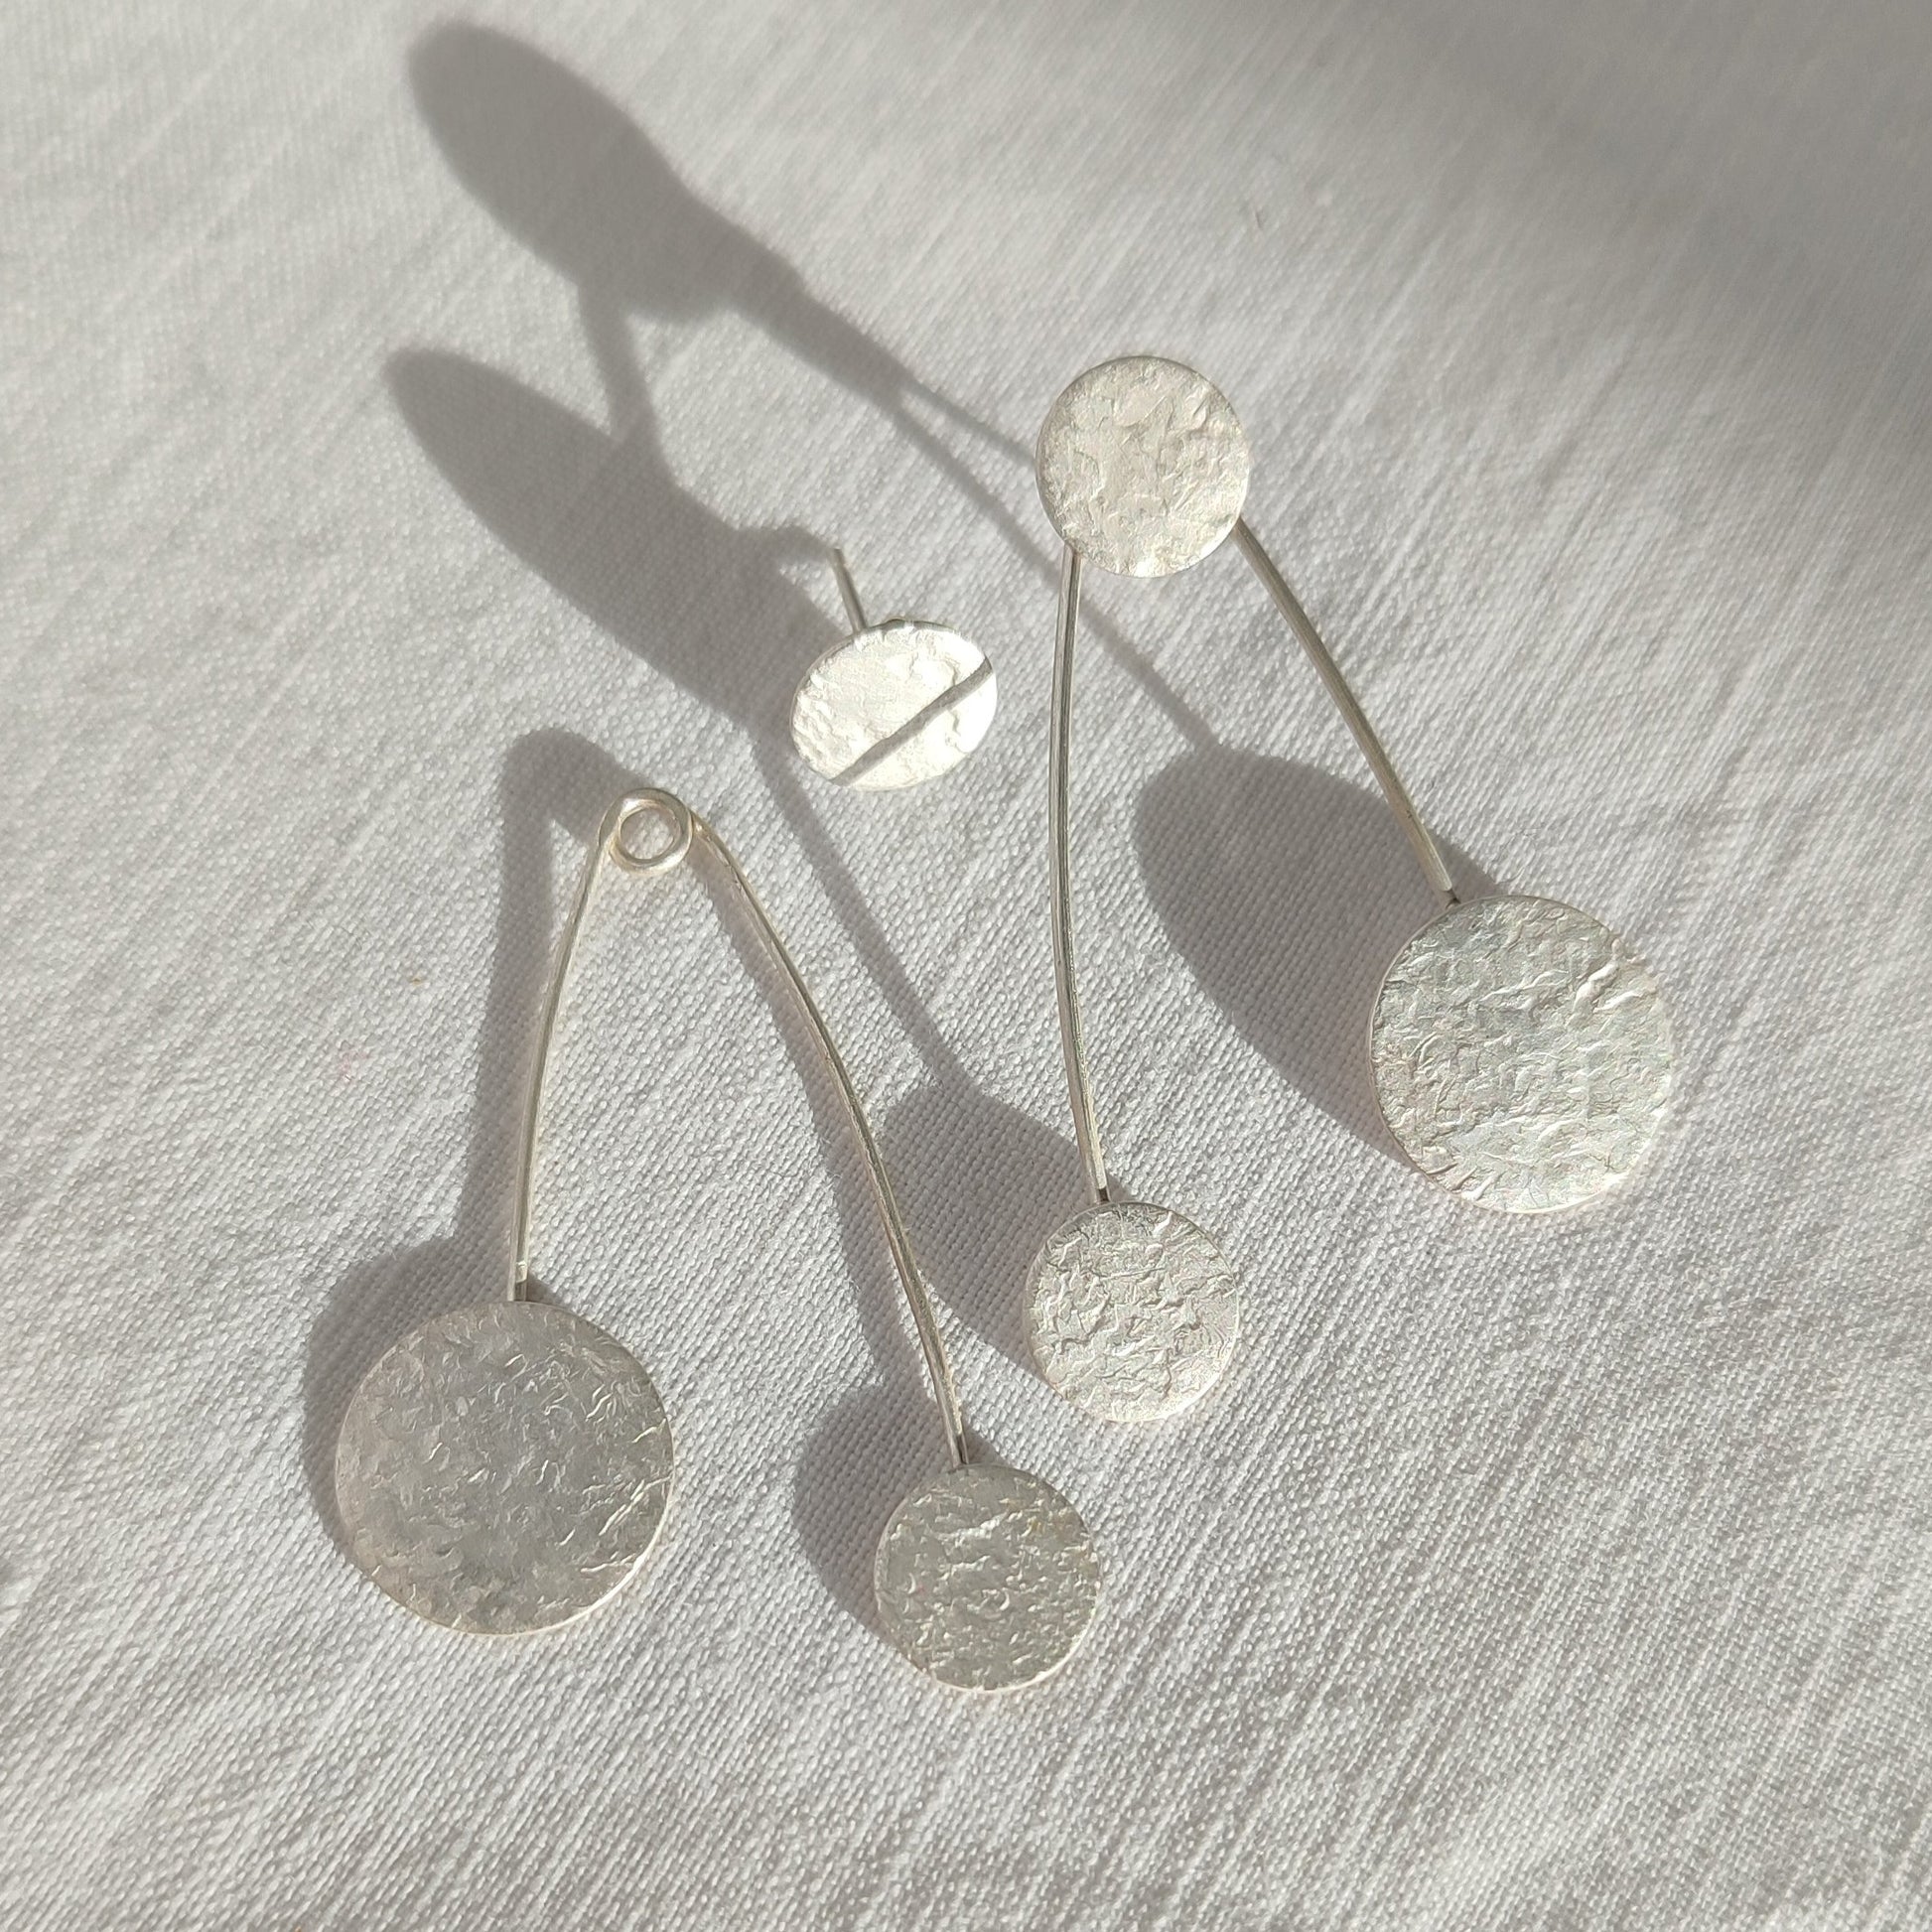 Silver interchangeable earrings